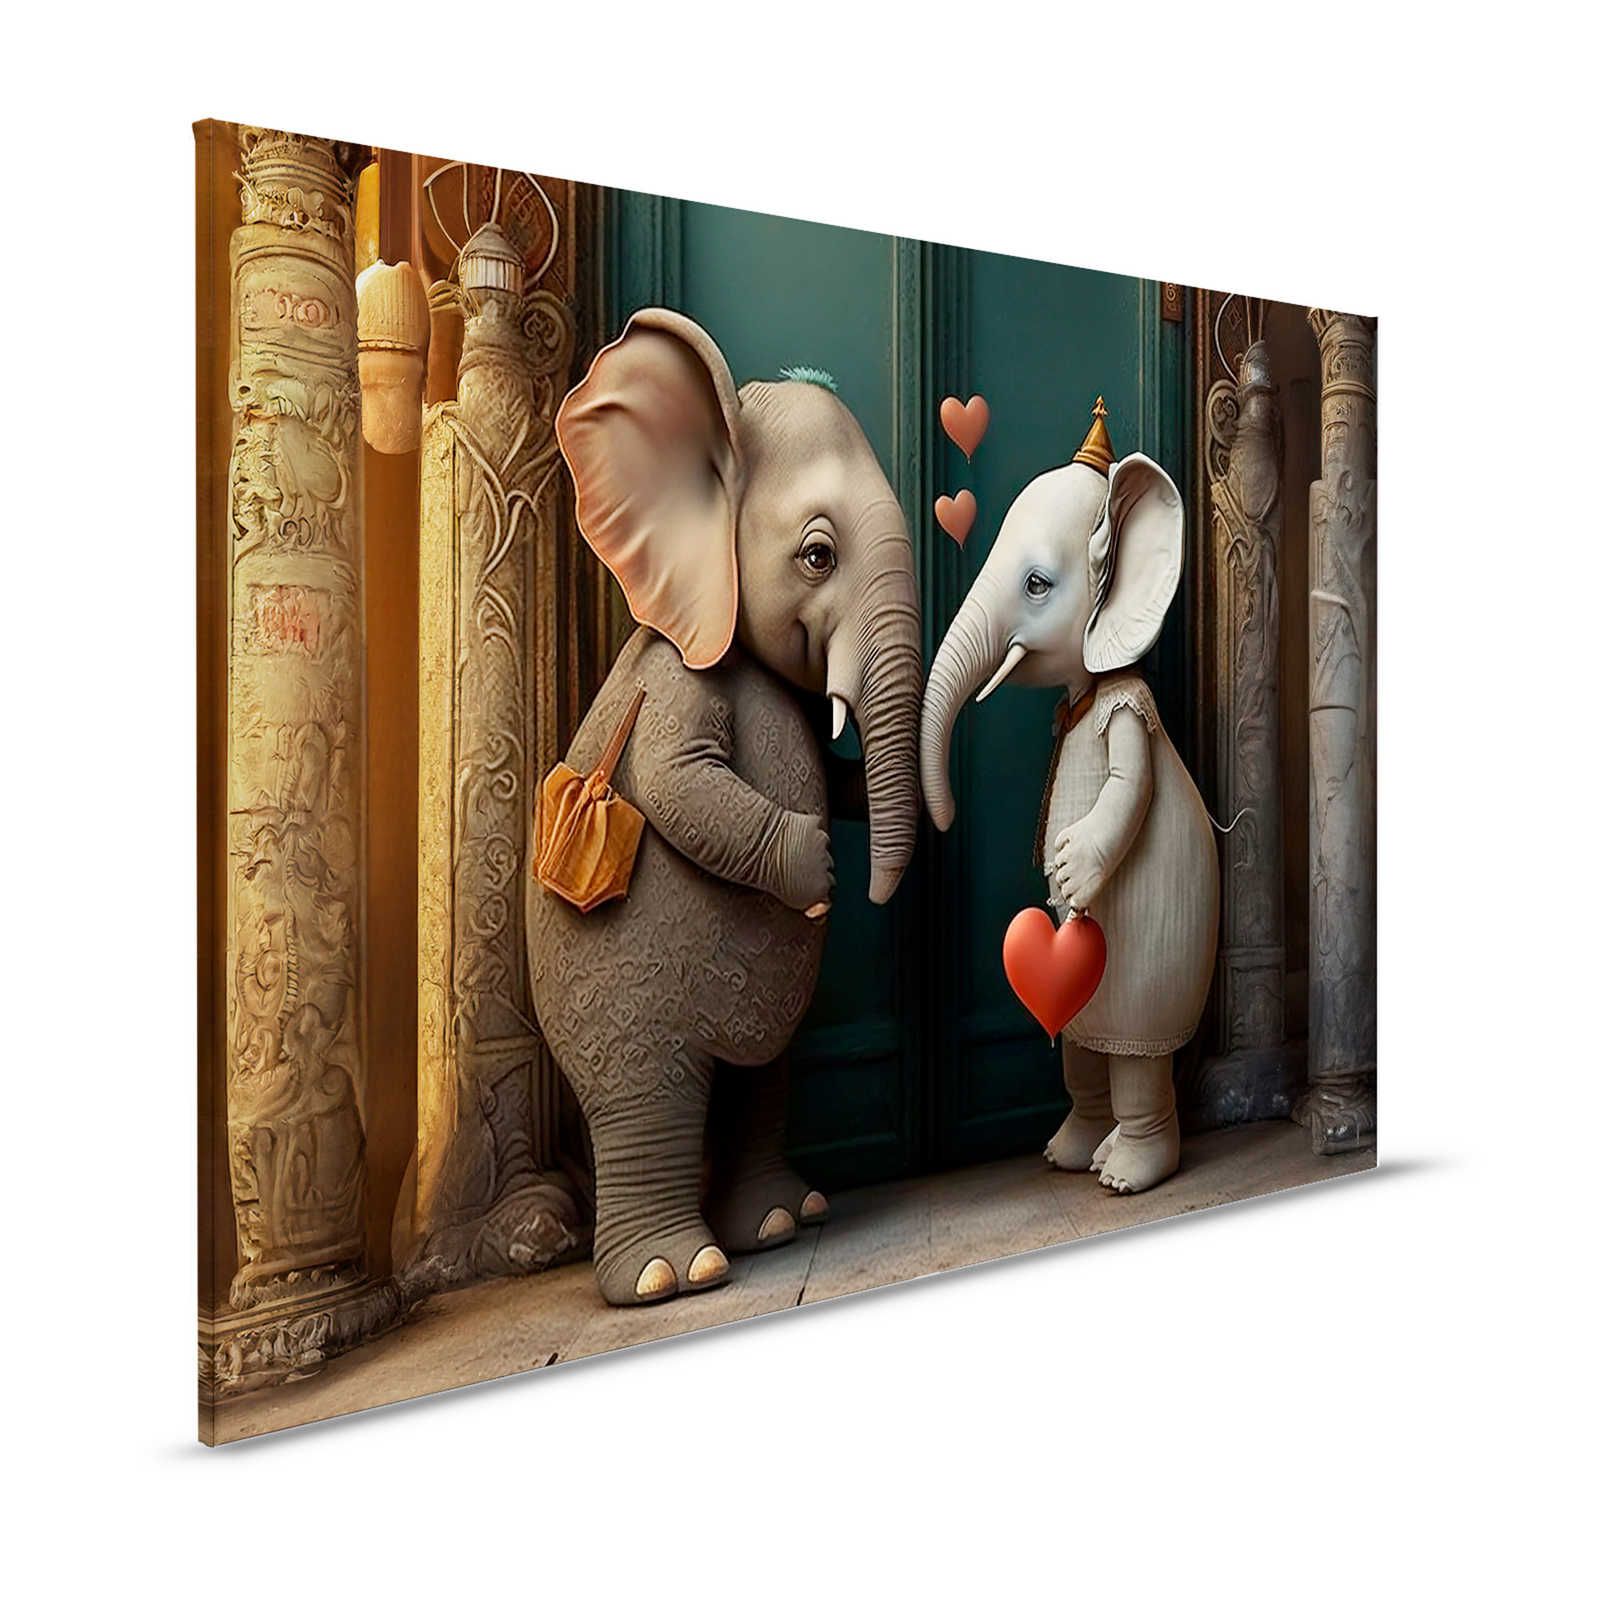 KI Cuadro »amor de elefante« - 120 cm x 80 cm
